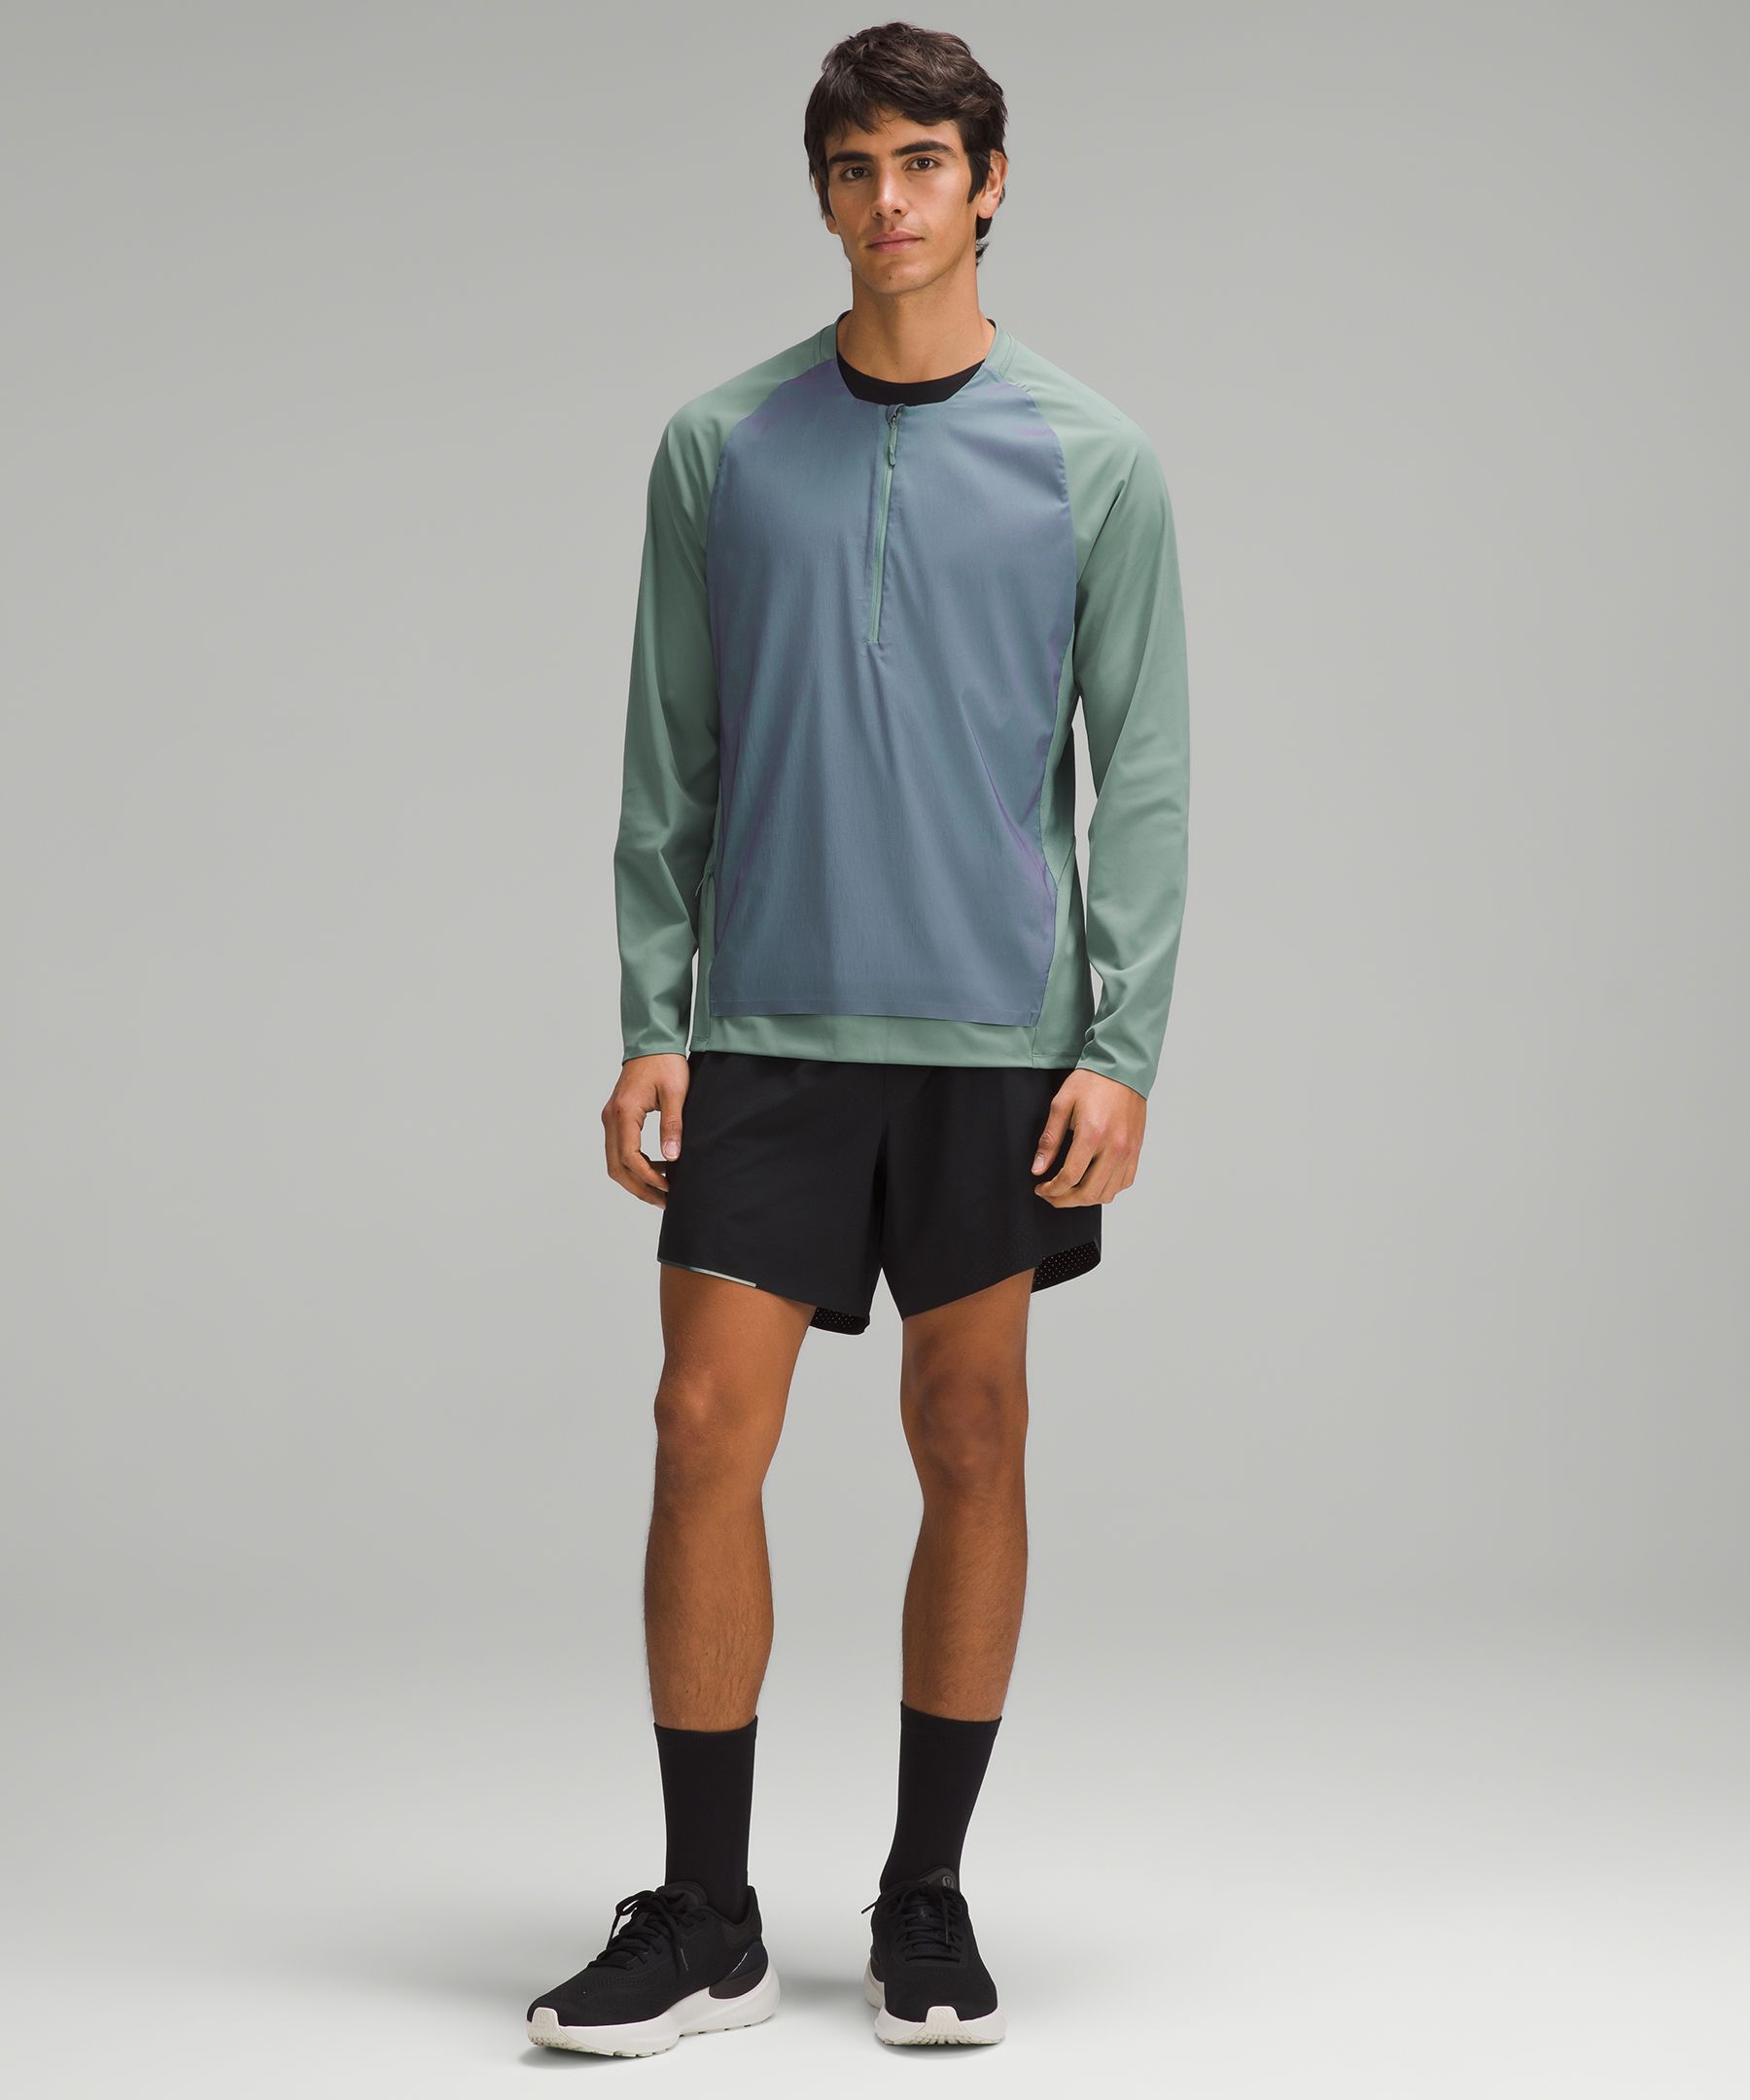 Nulux Running Half-Zip *Iridescent | Men's Hoodies & Sweatshirts